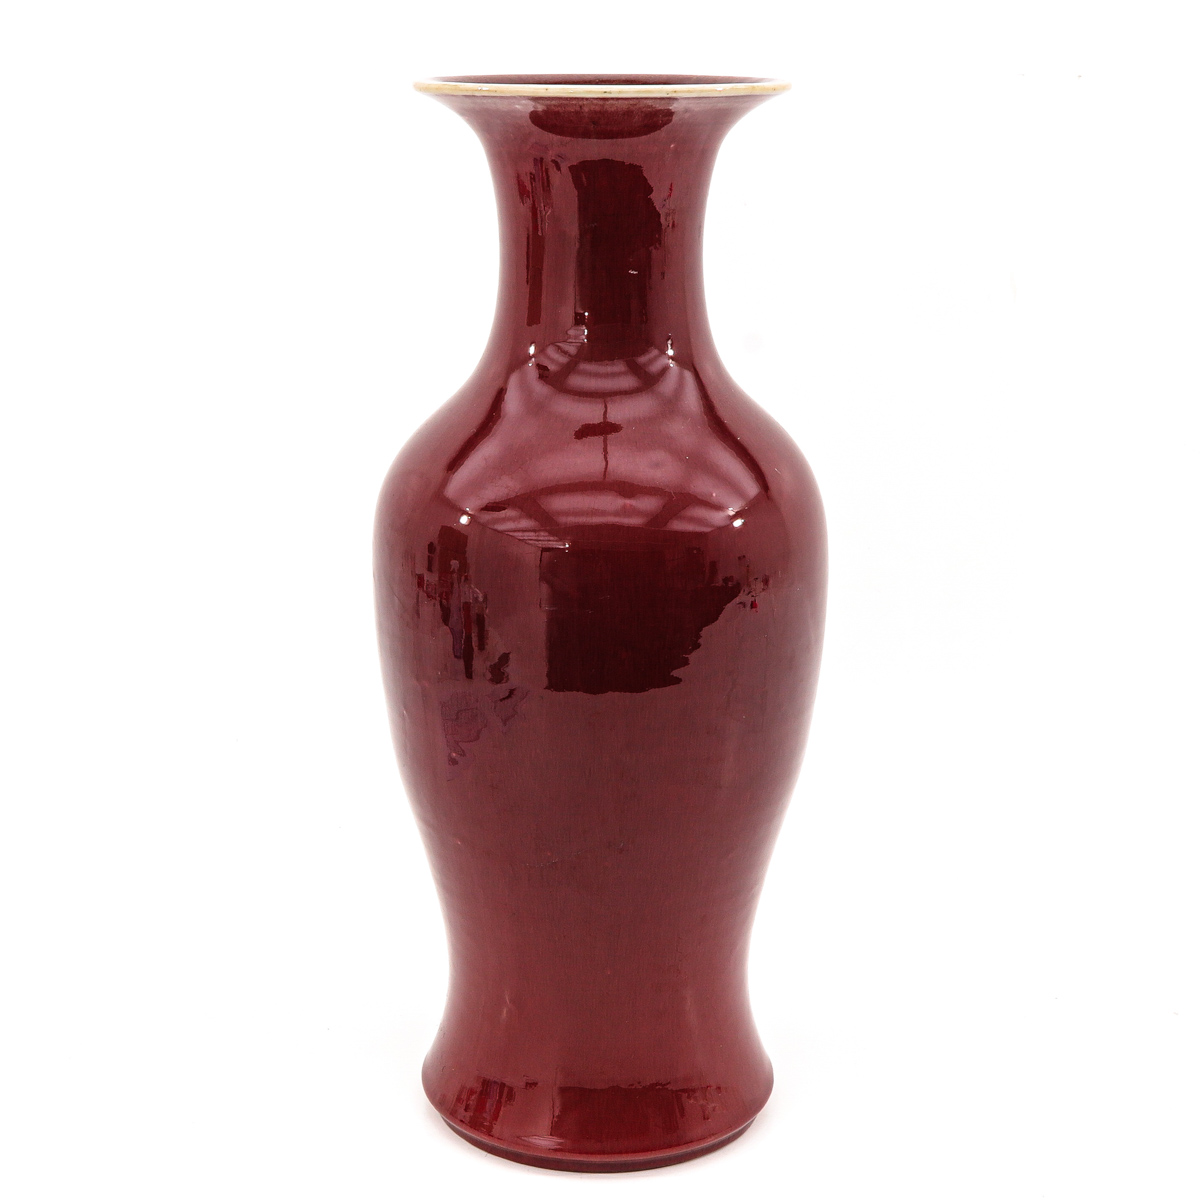 A Large Sang de Boeuf Vase